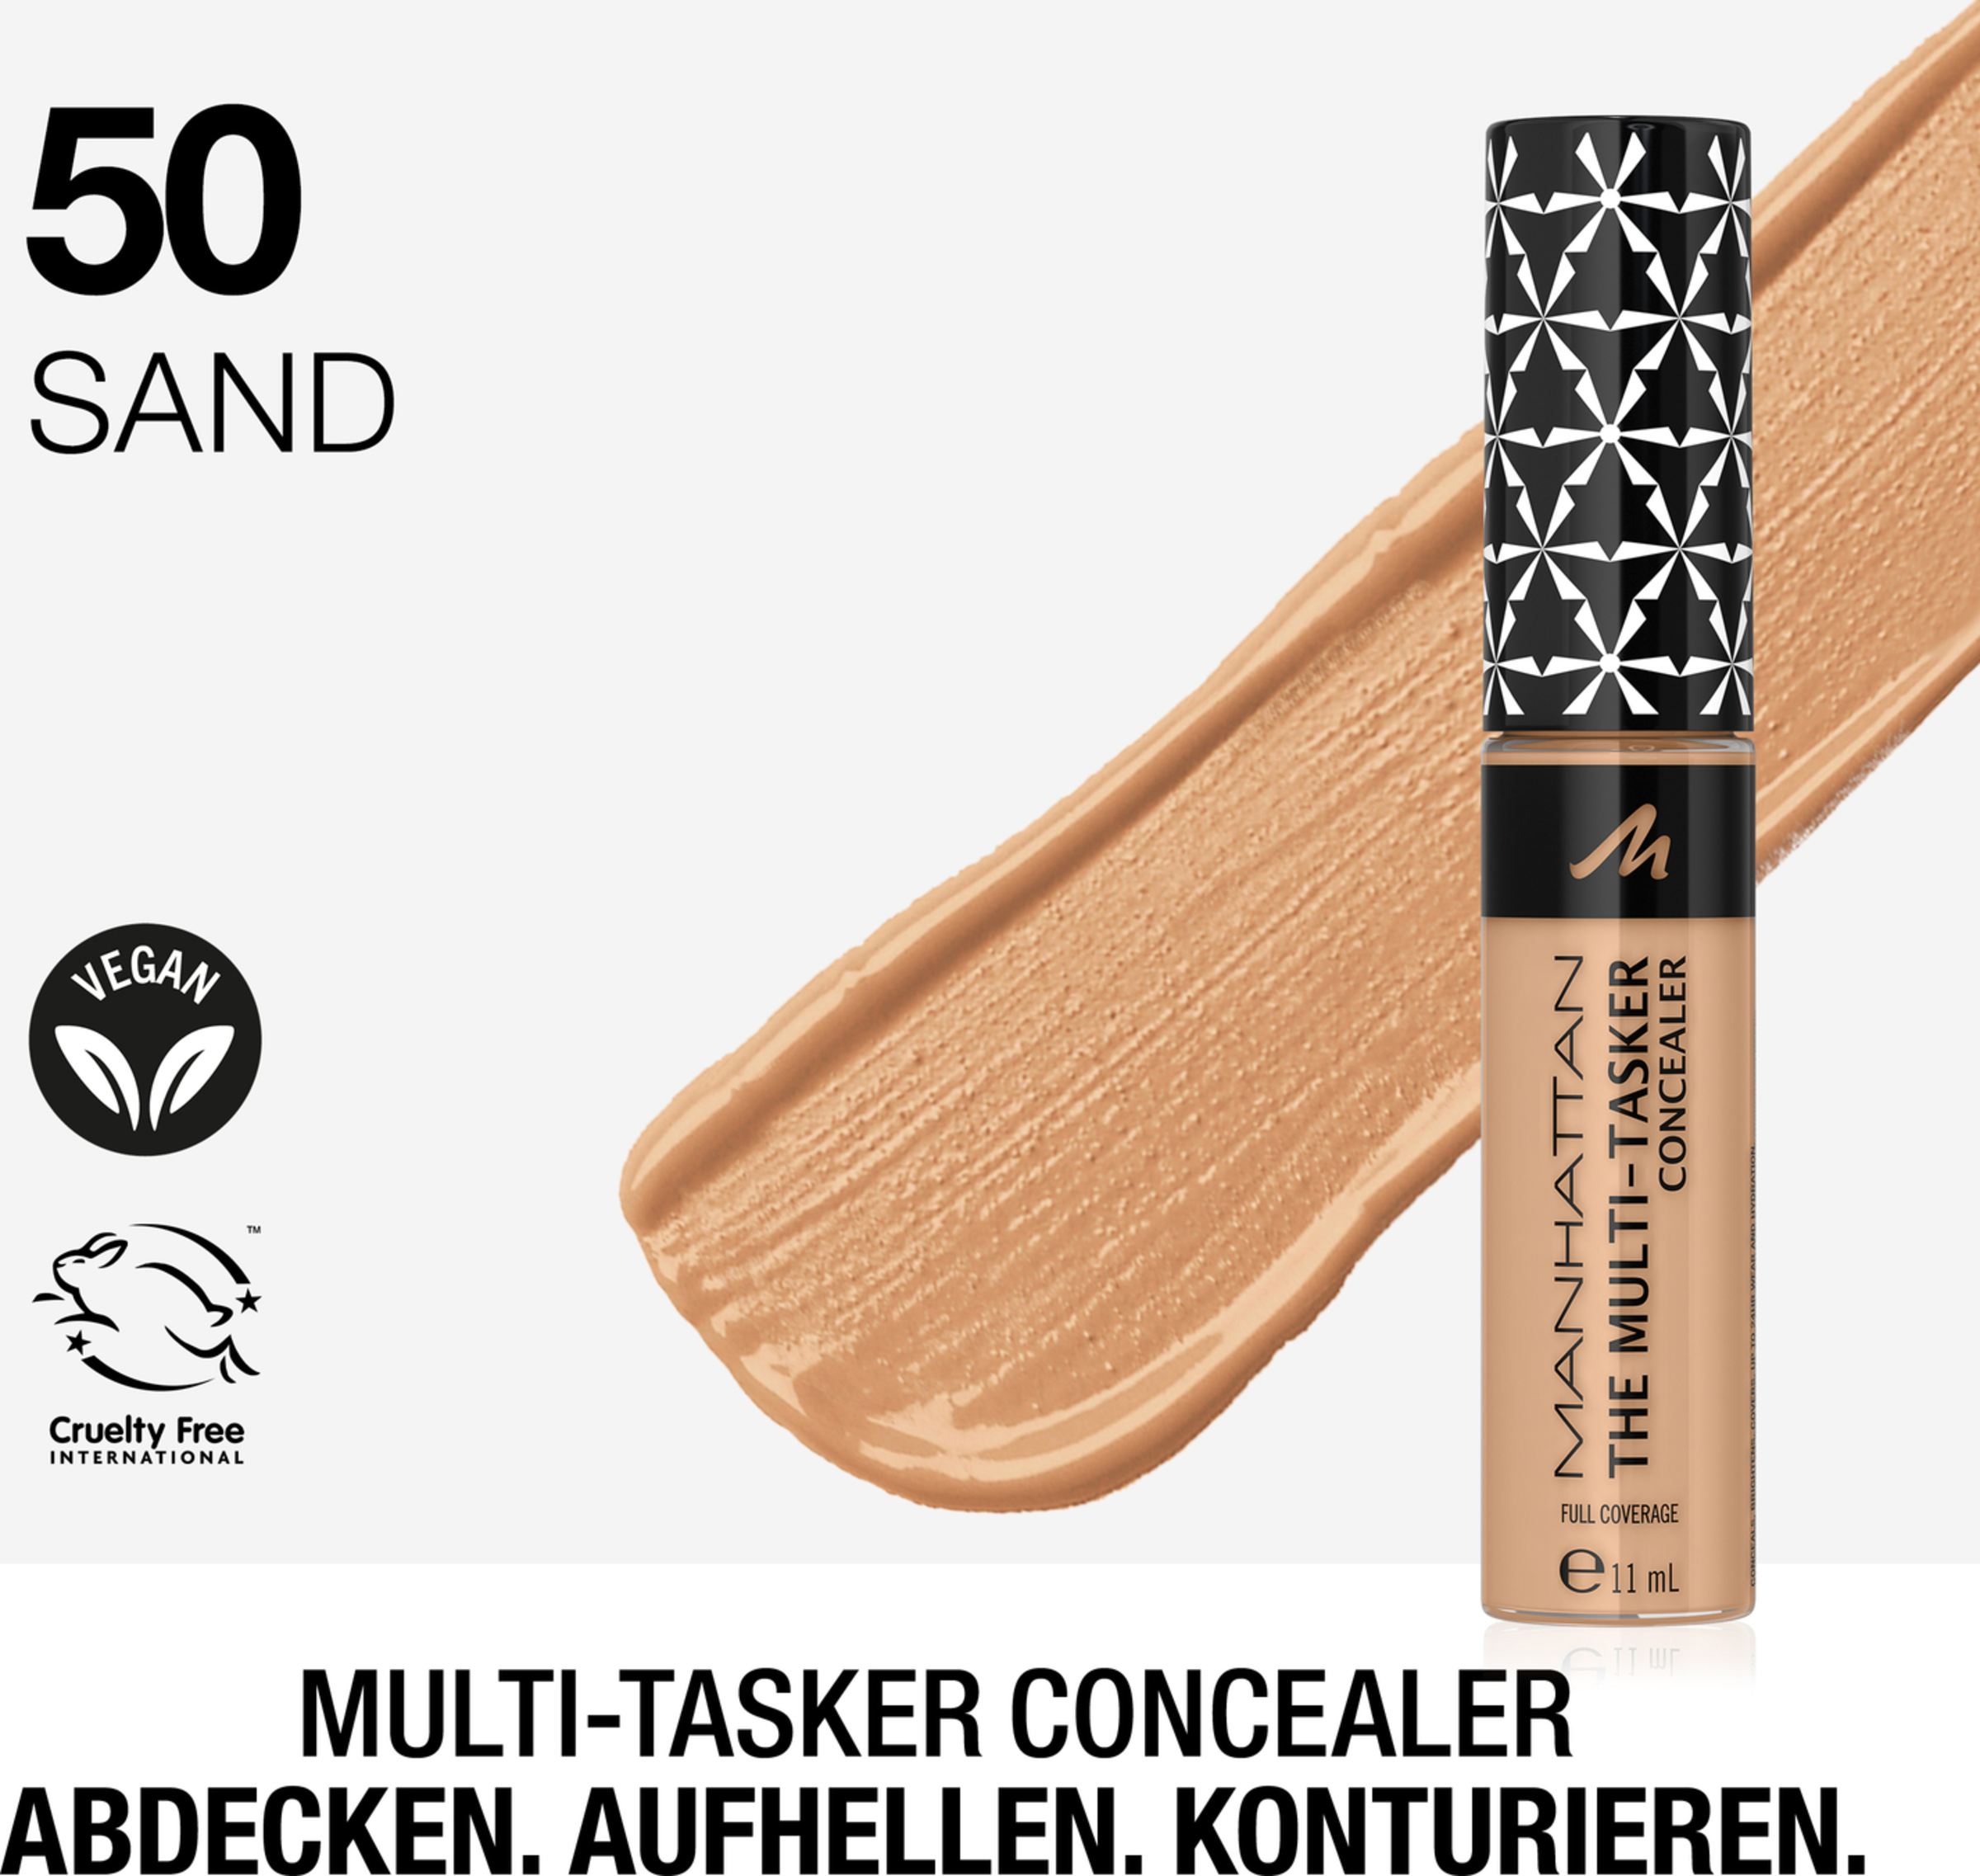 Manhattan Multi-Tasker Concealer 50 Sand Køb online | rossmann.dk